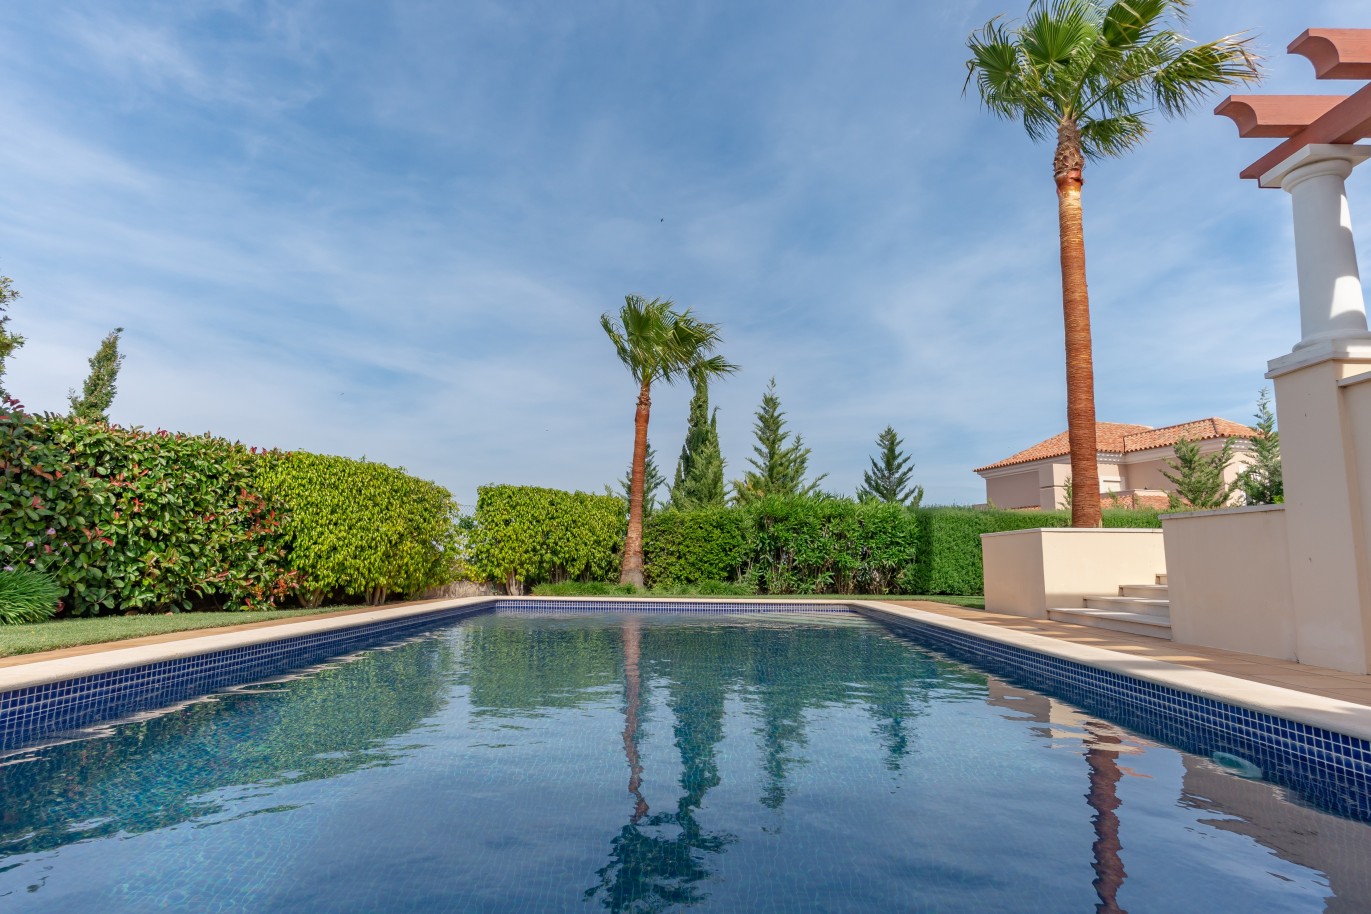 Moradia V4 com piscina, para venda em Vila Real de Santo Antonio, Algarve_215711